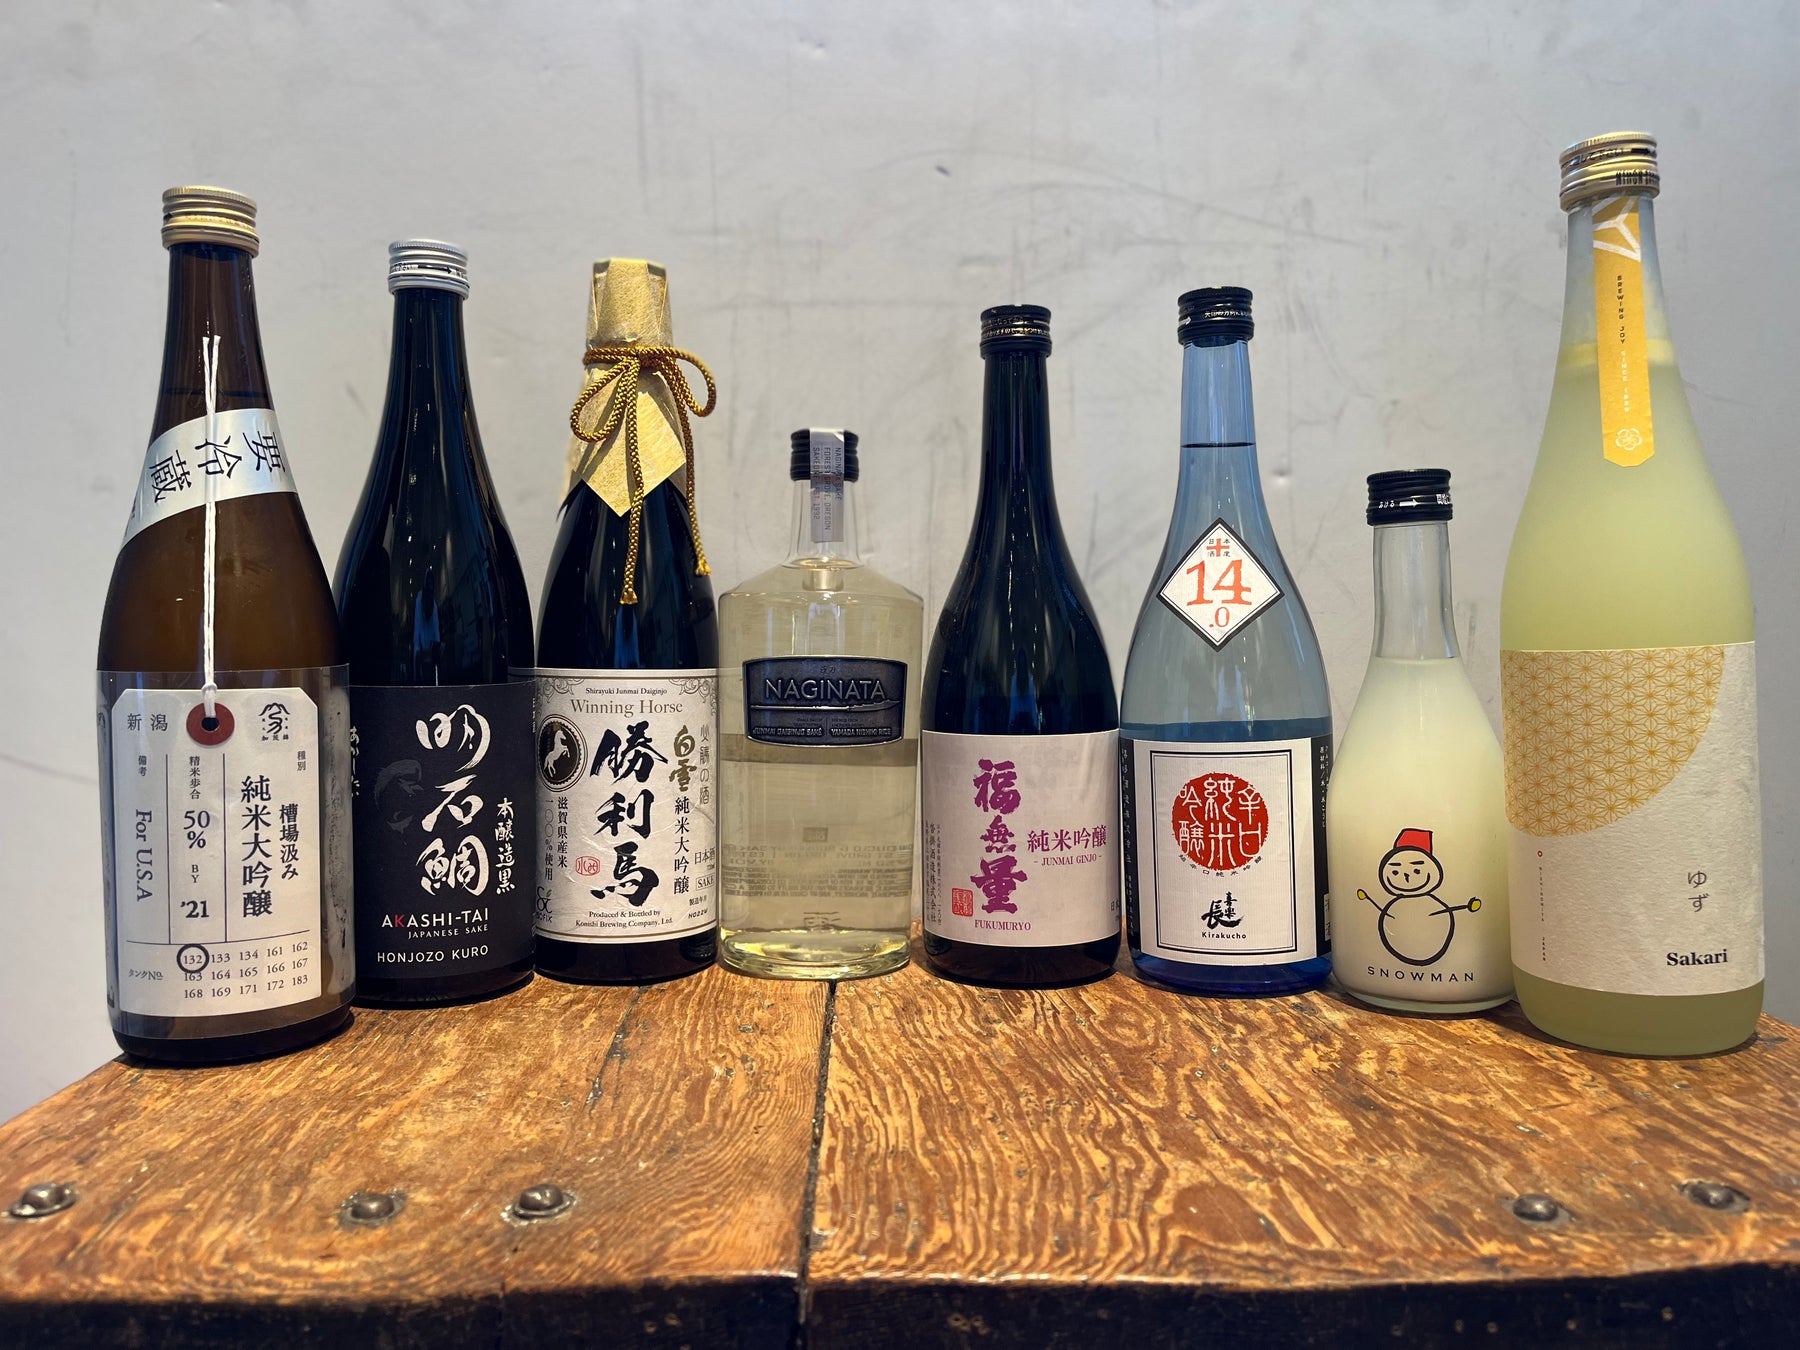 New Store Arrivals – Kamonishiki, Akashi Tai, Shirayuki, Sake One, Fukumyru, Den, & more.